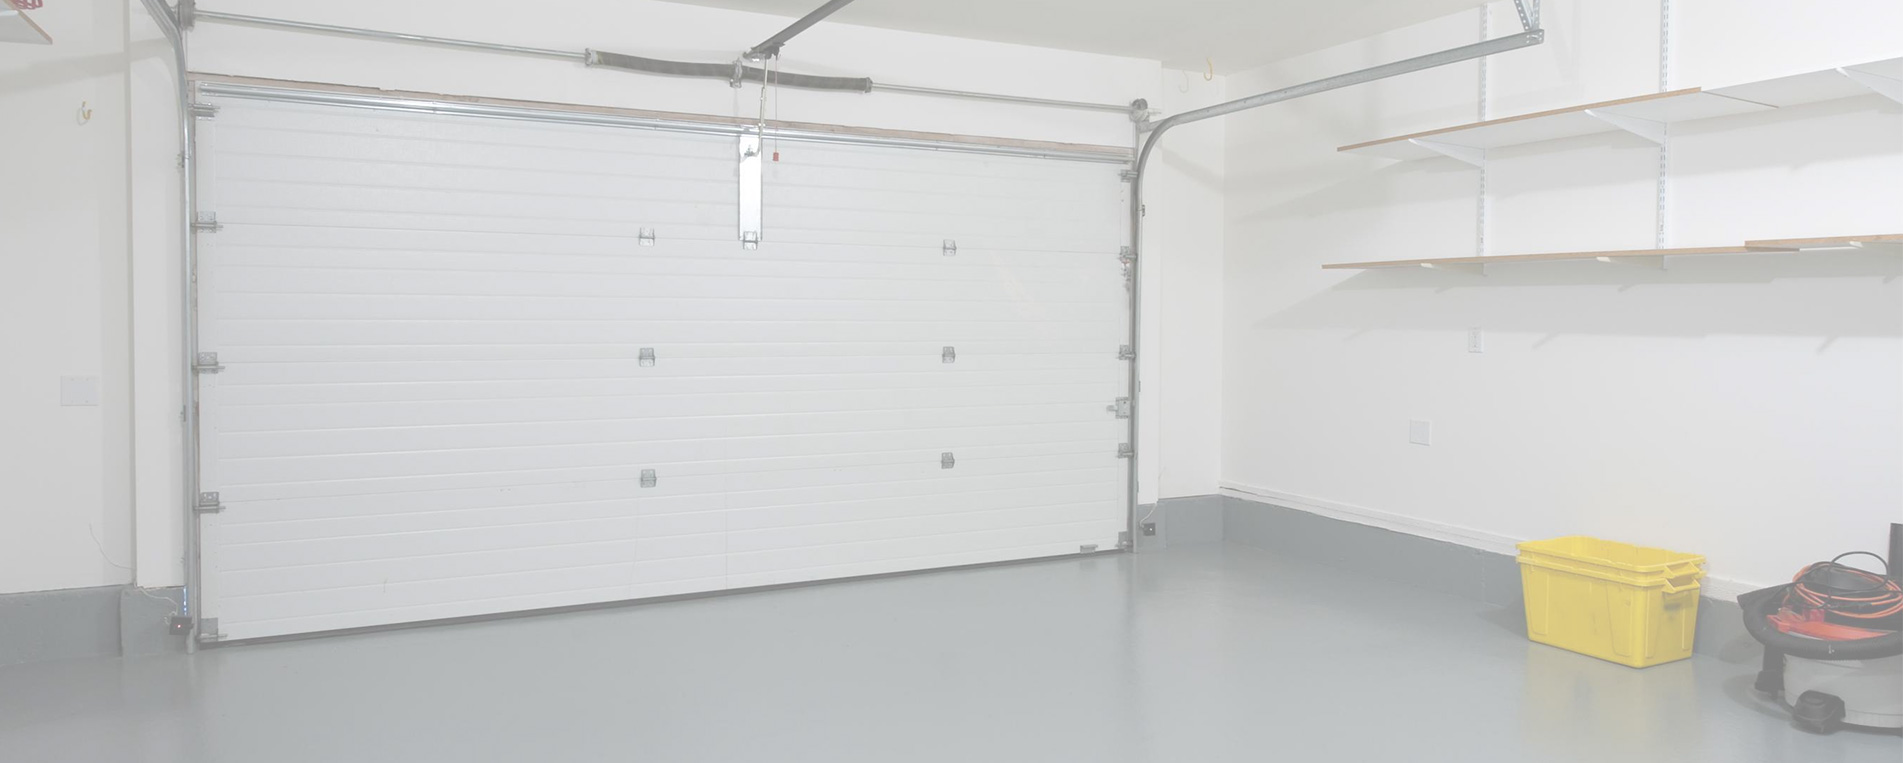 Track Replacement For Garage Door In Apple Valley